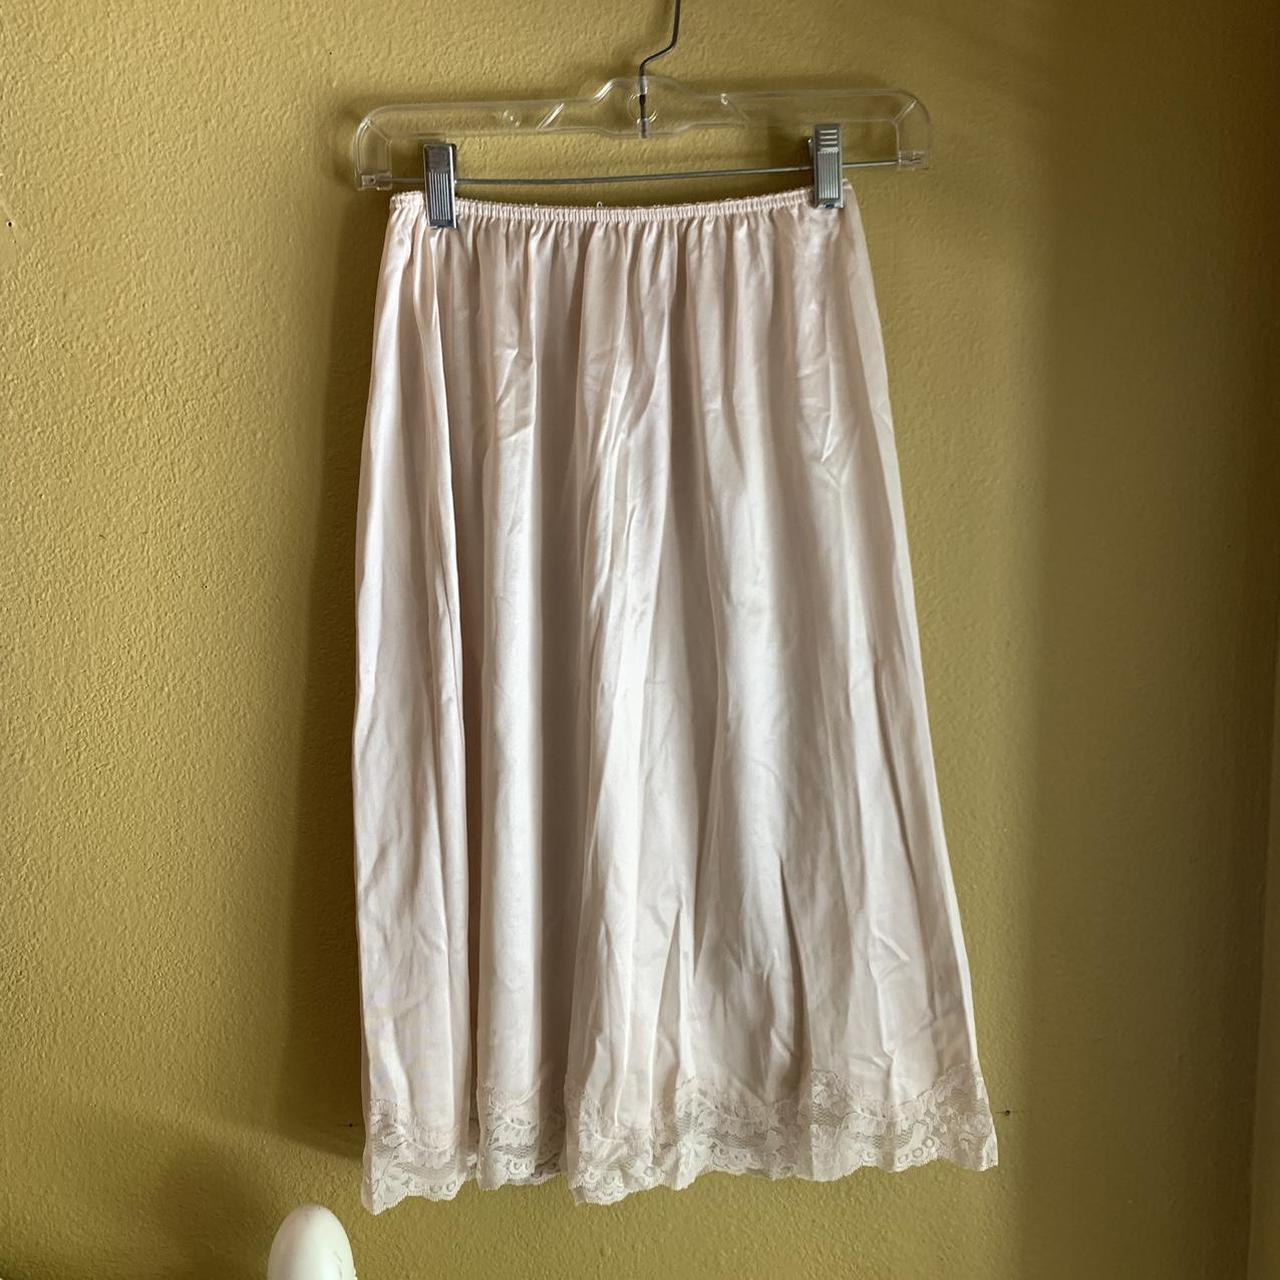 Very vintage nude skirt slip 💋🌸 • best for xs •... - Depop